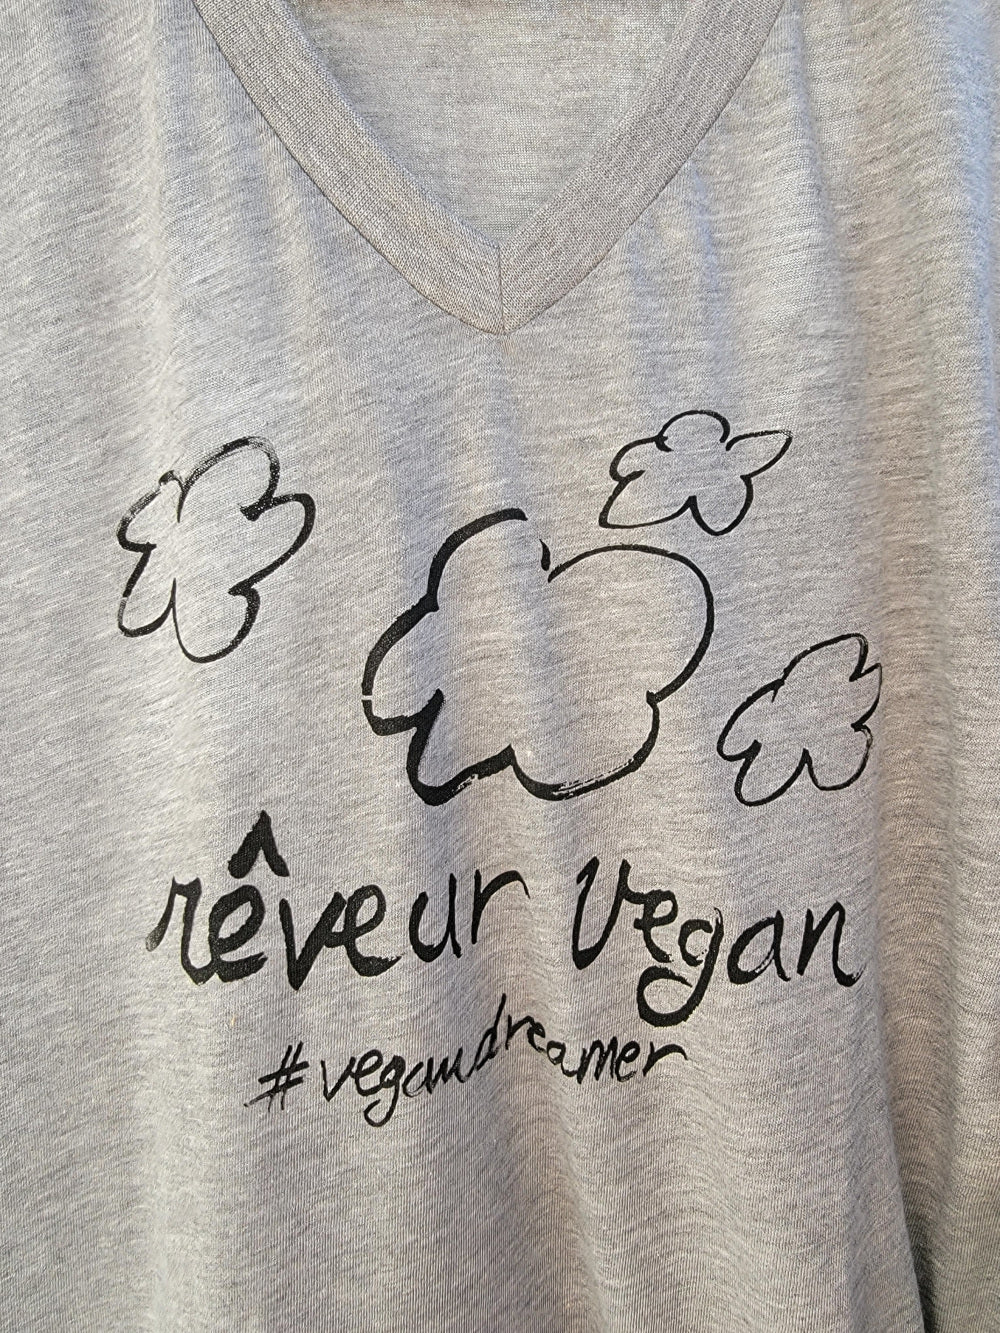 Reveur Vegan Tshirt (Vegan Dreamer in French)